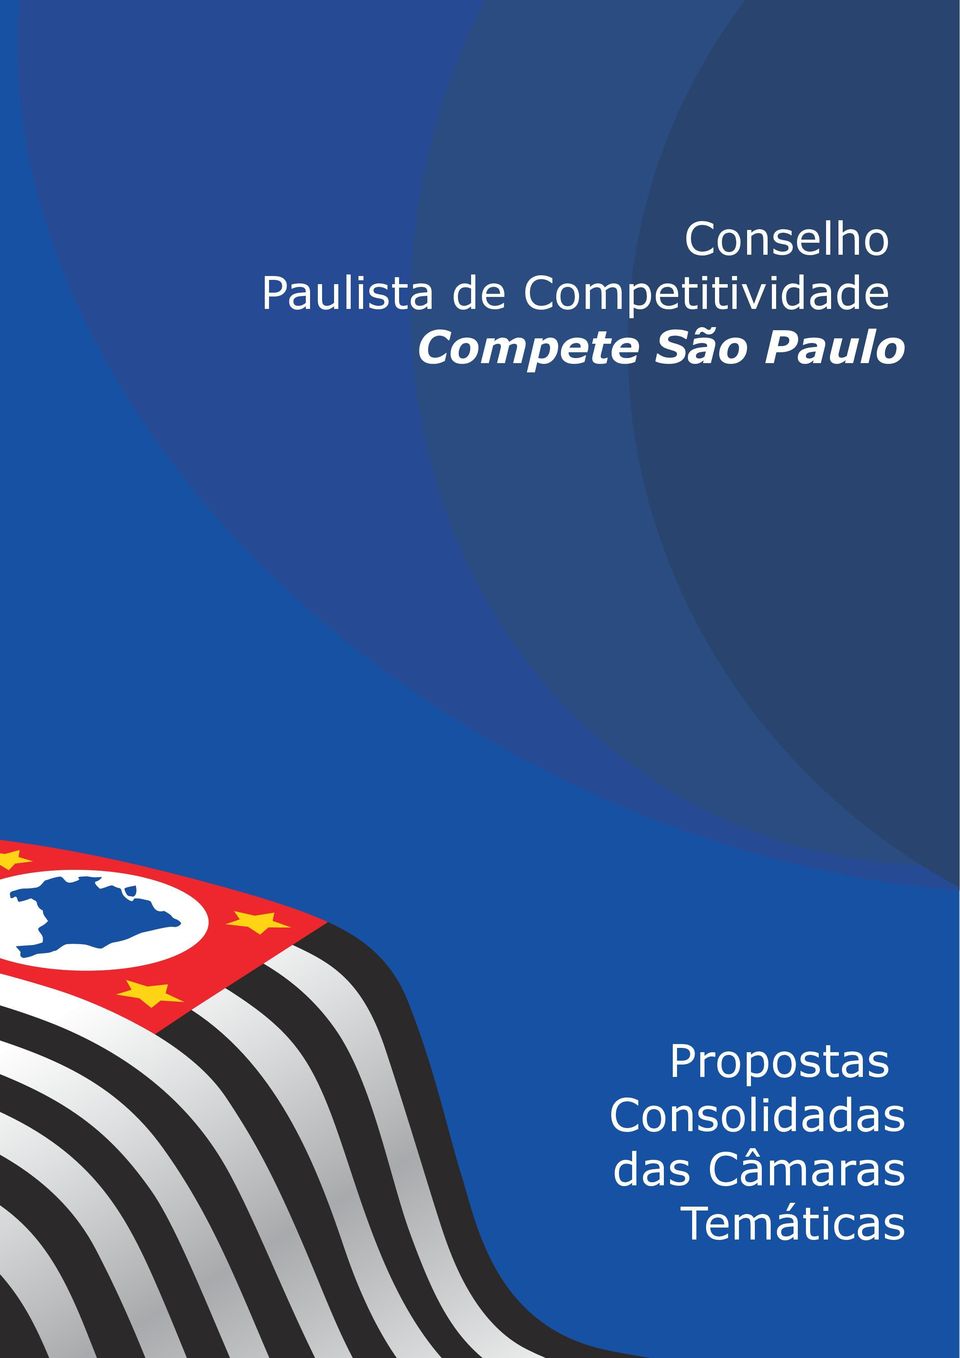 São Paulo Propostas